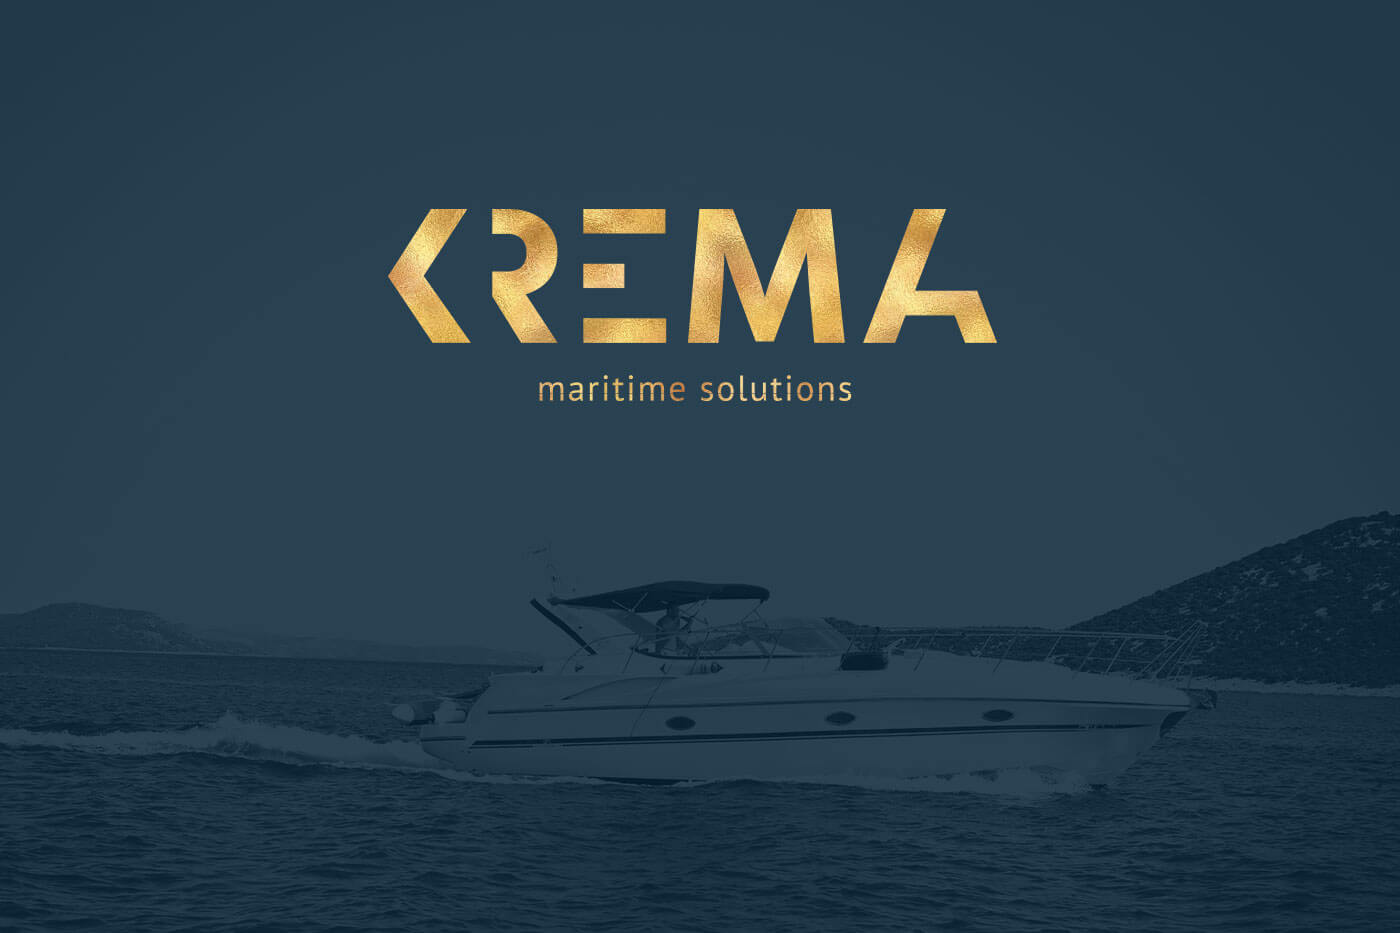 Logo mit Goldfolie für das Luxus-Yachtunternehmen Krema